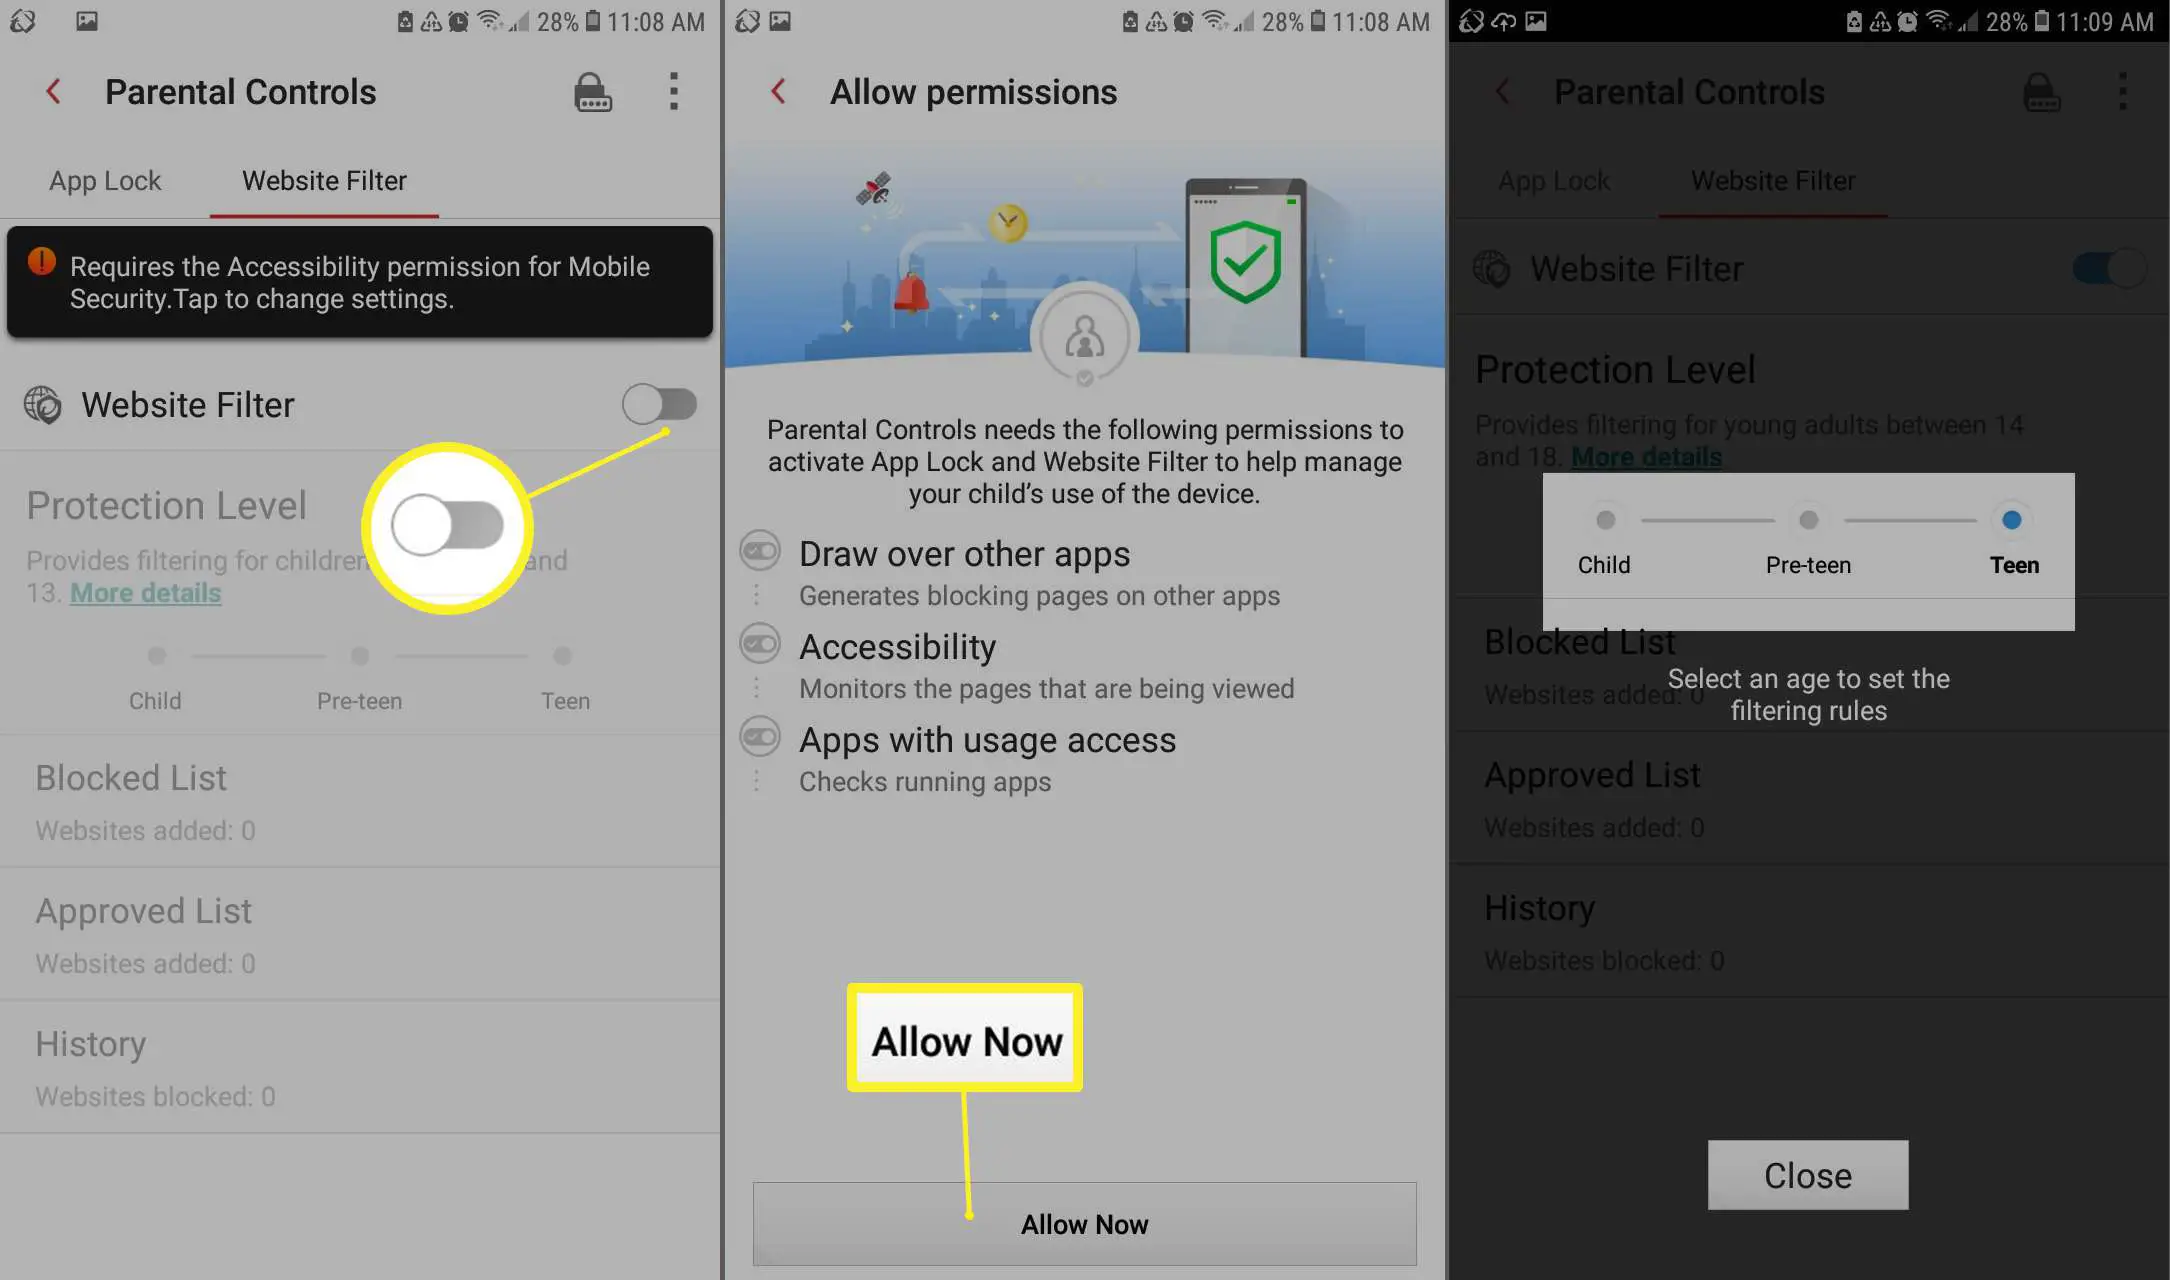 Configure o controle dos pais para Android com o aplicativo Mobile Security